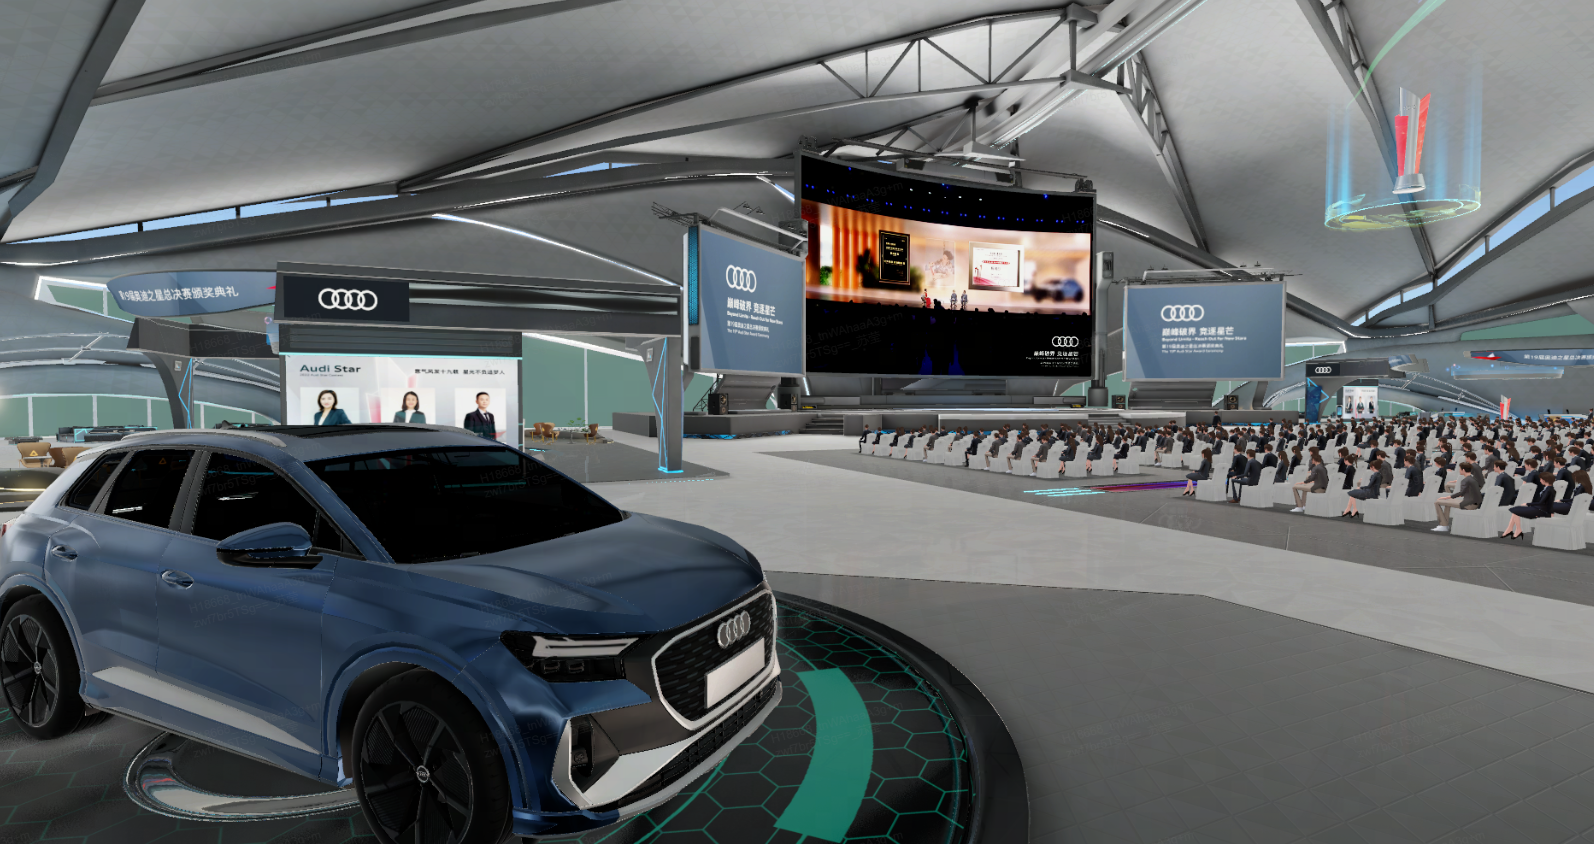 这是一张室内活动现场的图片，中心有一辆蓝色奥迪汽车，背景是大屏幕和观众席，环境现代科技感强。